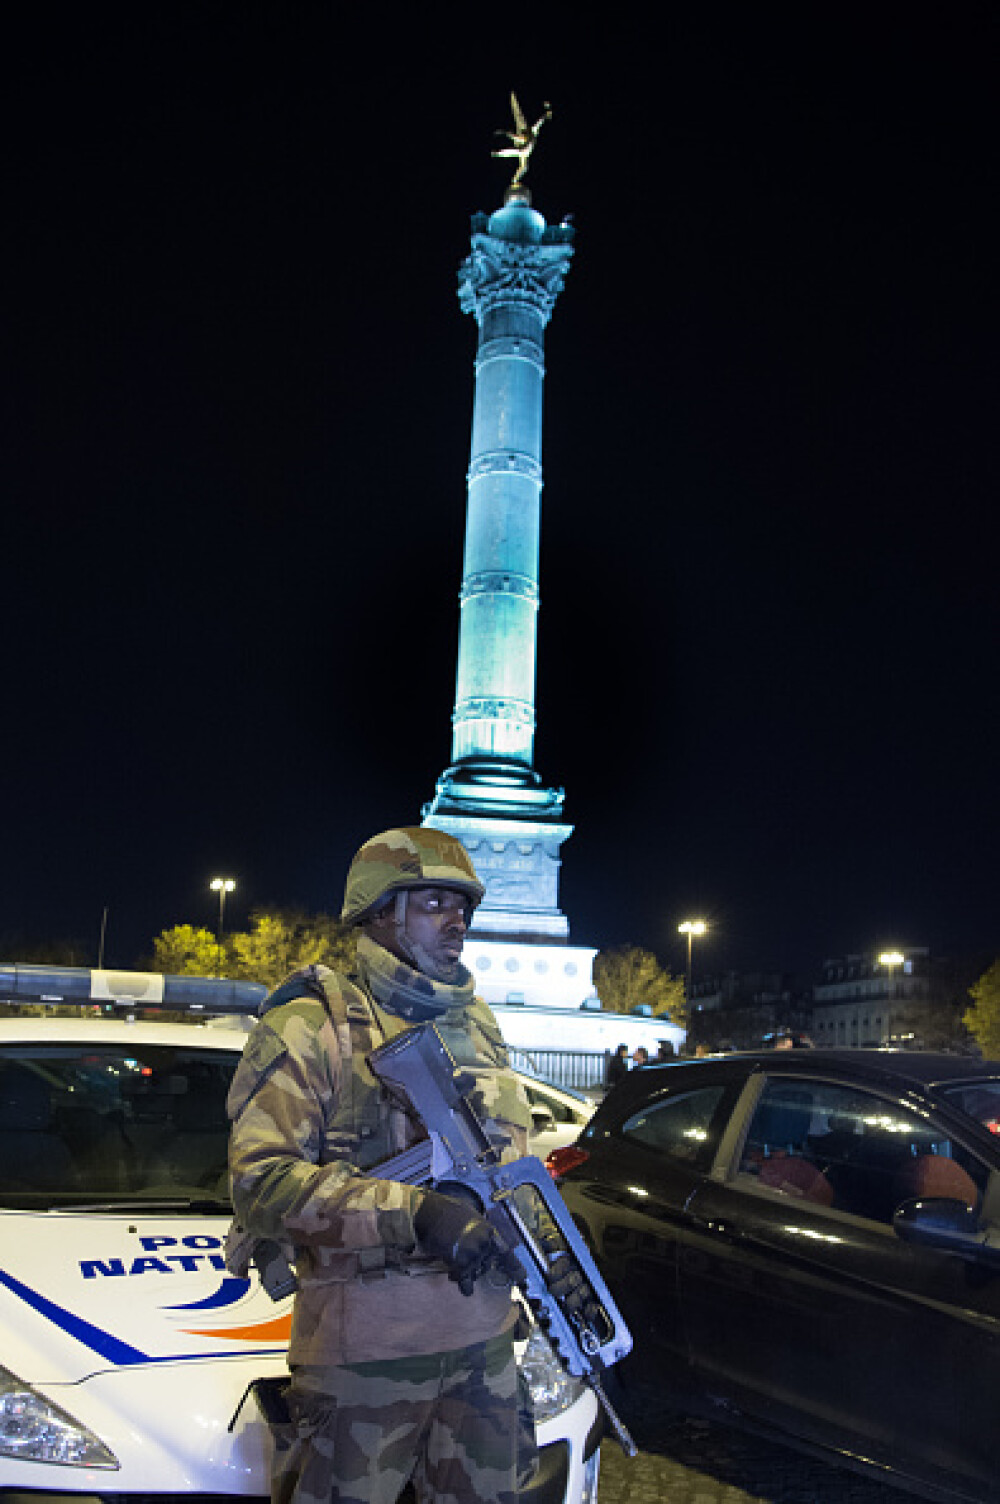 ATENTATE TERORISTE LA PARIS. Bilantul a urcat la 129 de morti. Detalii din ancheta: Teroristii, impartiti in trei echipe - Imaginea 19